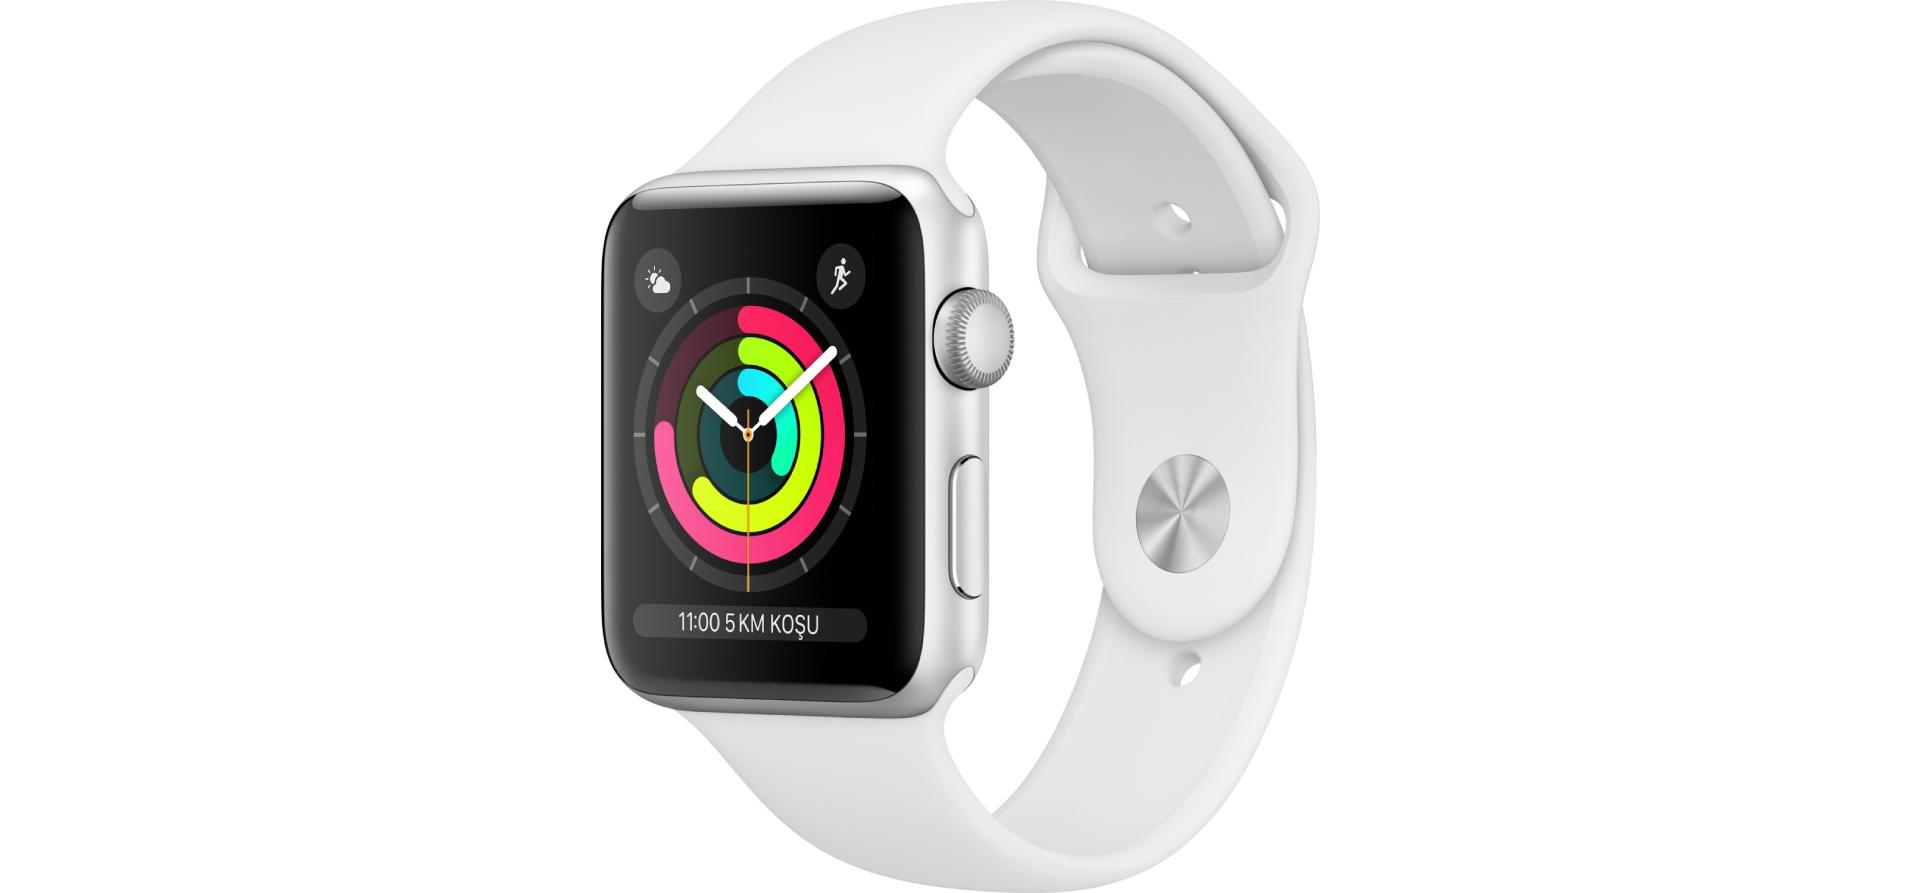 apple watch 3 inceleme, apple watch 3 şikayetleri, apple watch özellikleri